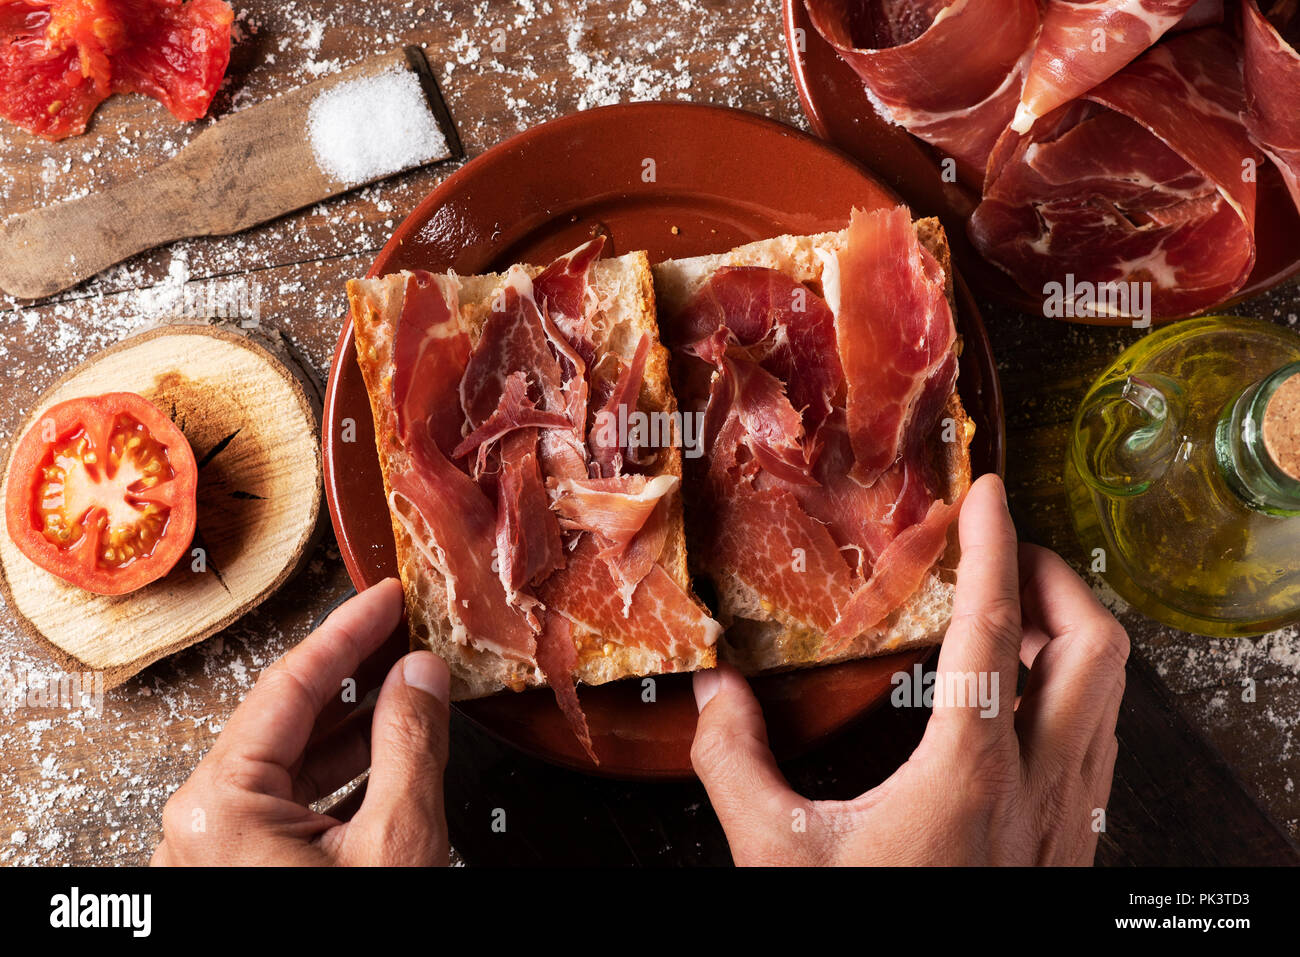 Elevato angolo di visione di un uomo la preparazione di un tipico spagnolo bocadillo de jamon, un prosciutto Serrano sandwich, su una tavola in legno rustico, accanto ad una piastra con alcuni s Foto Stock